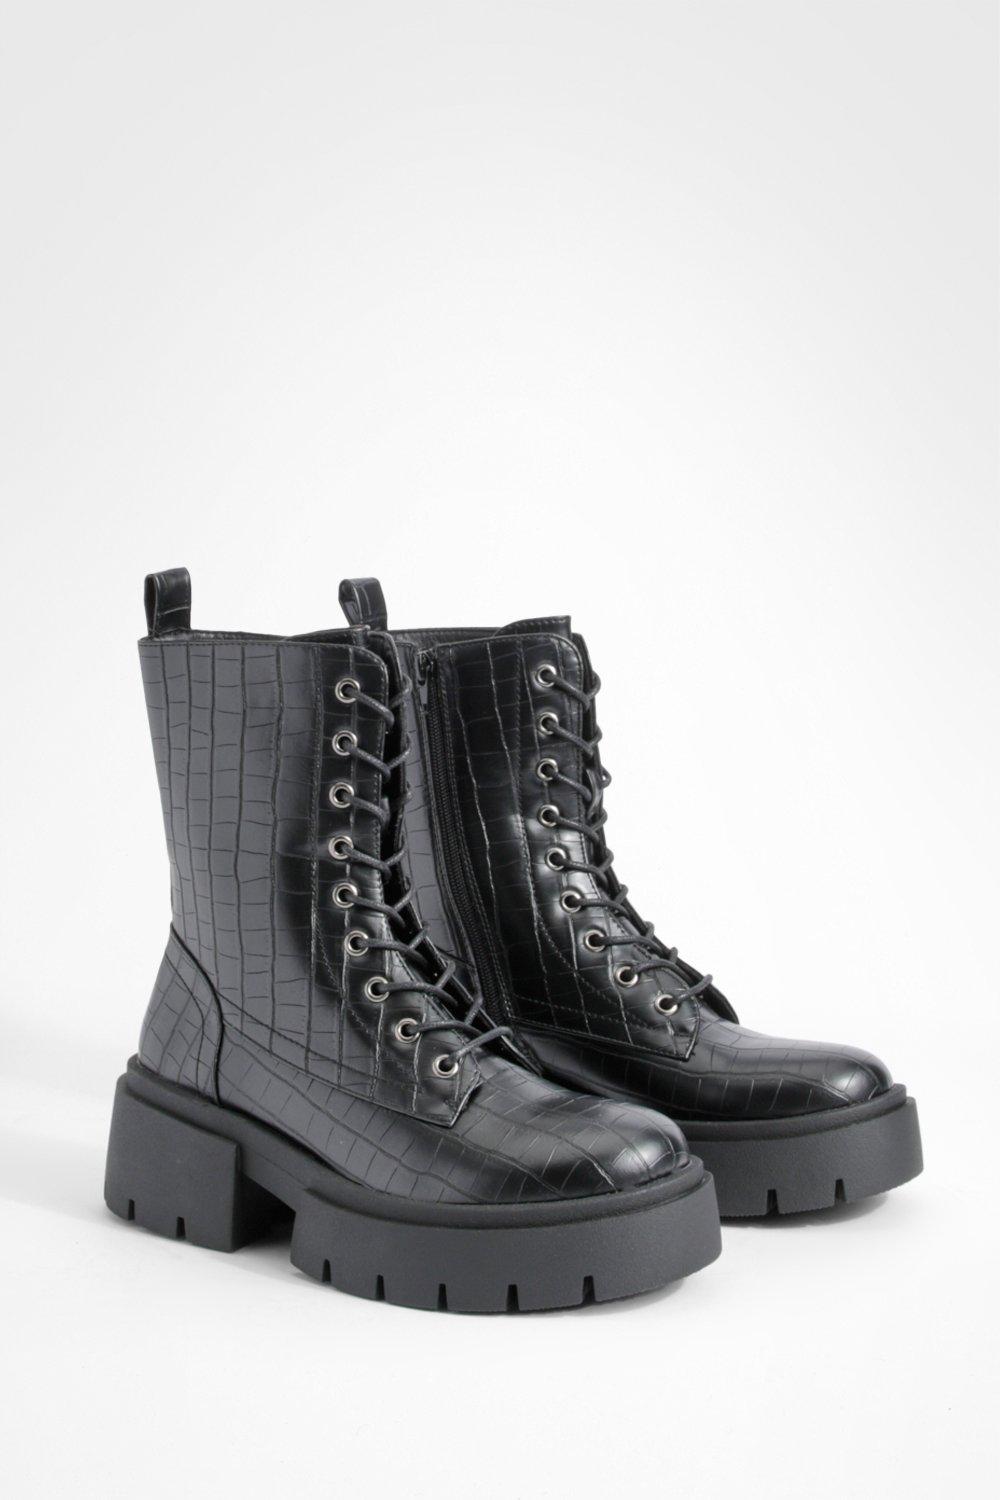 wide fit chunky croc hiker boots - noir - 39, noir